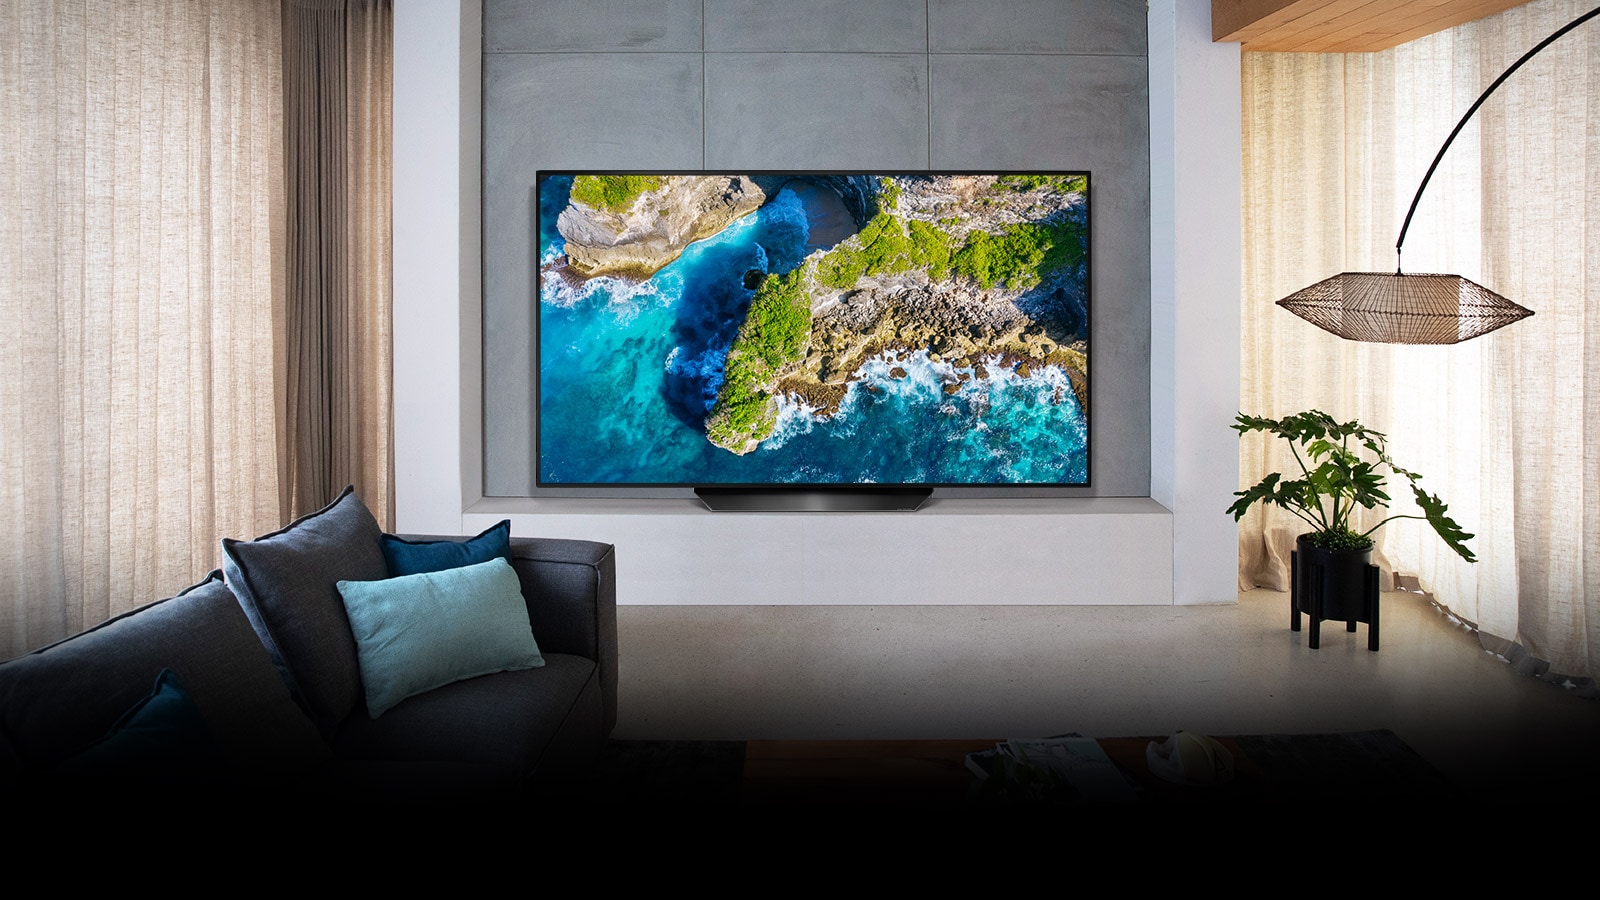 Un televisore in una casa lussuosamente arredata che mostra un'immagine della natura sullo schermo